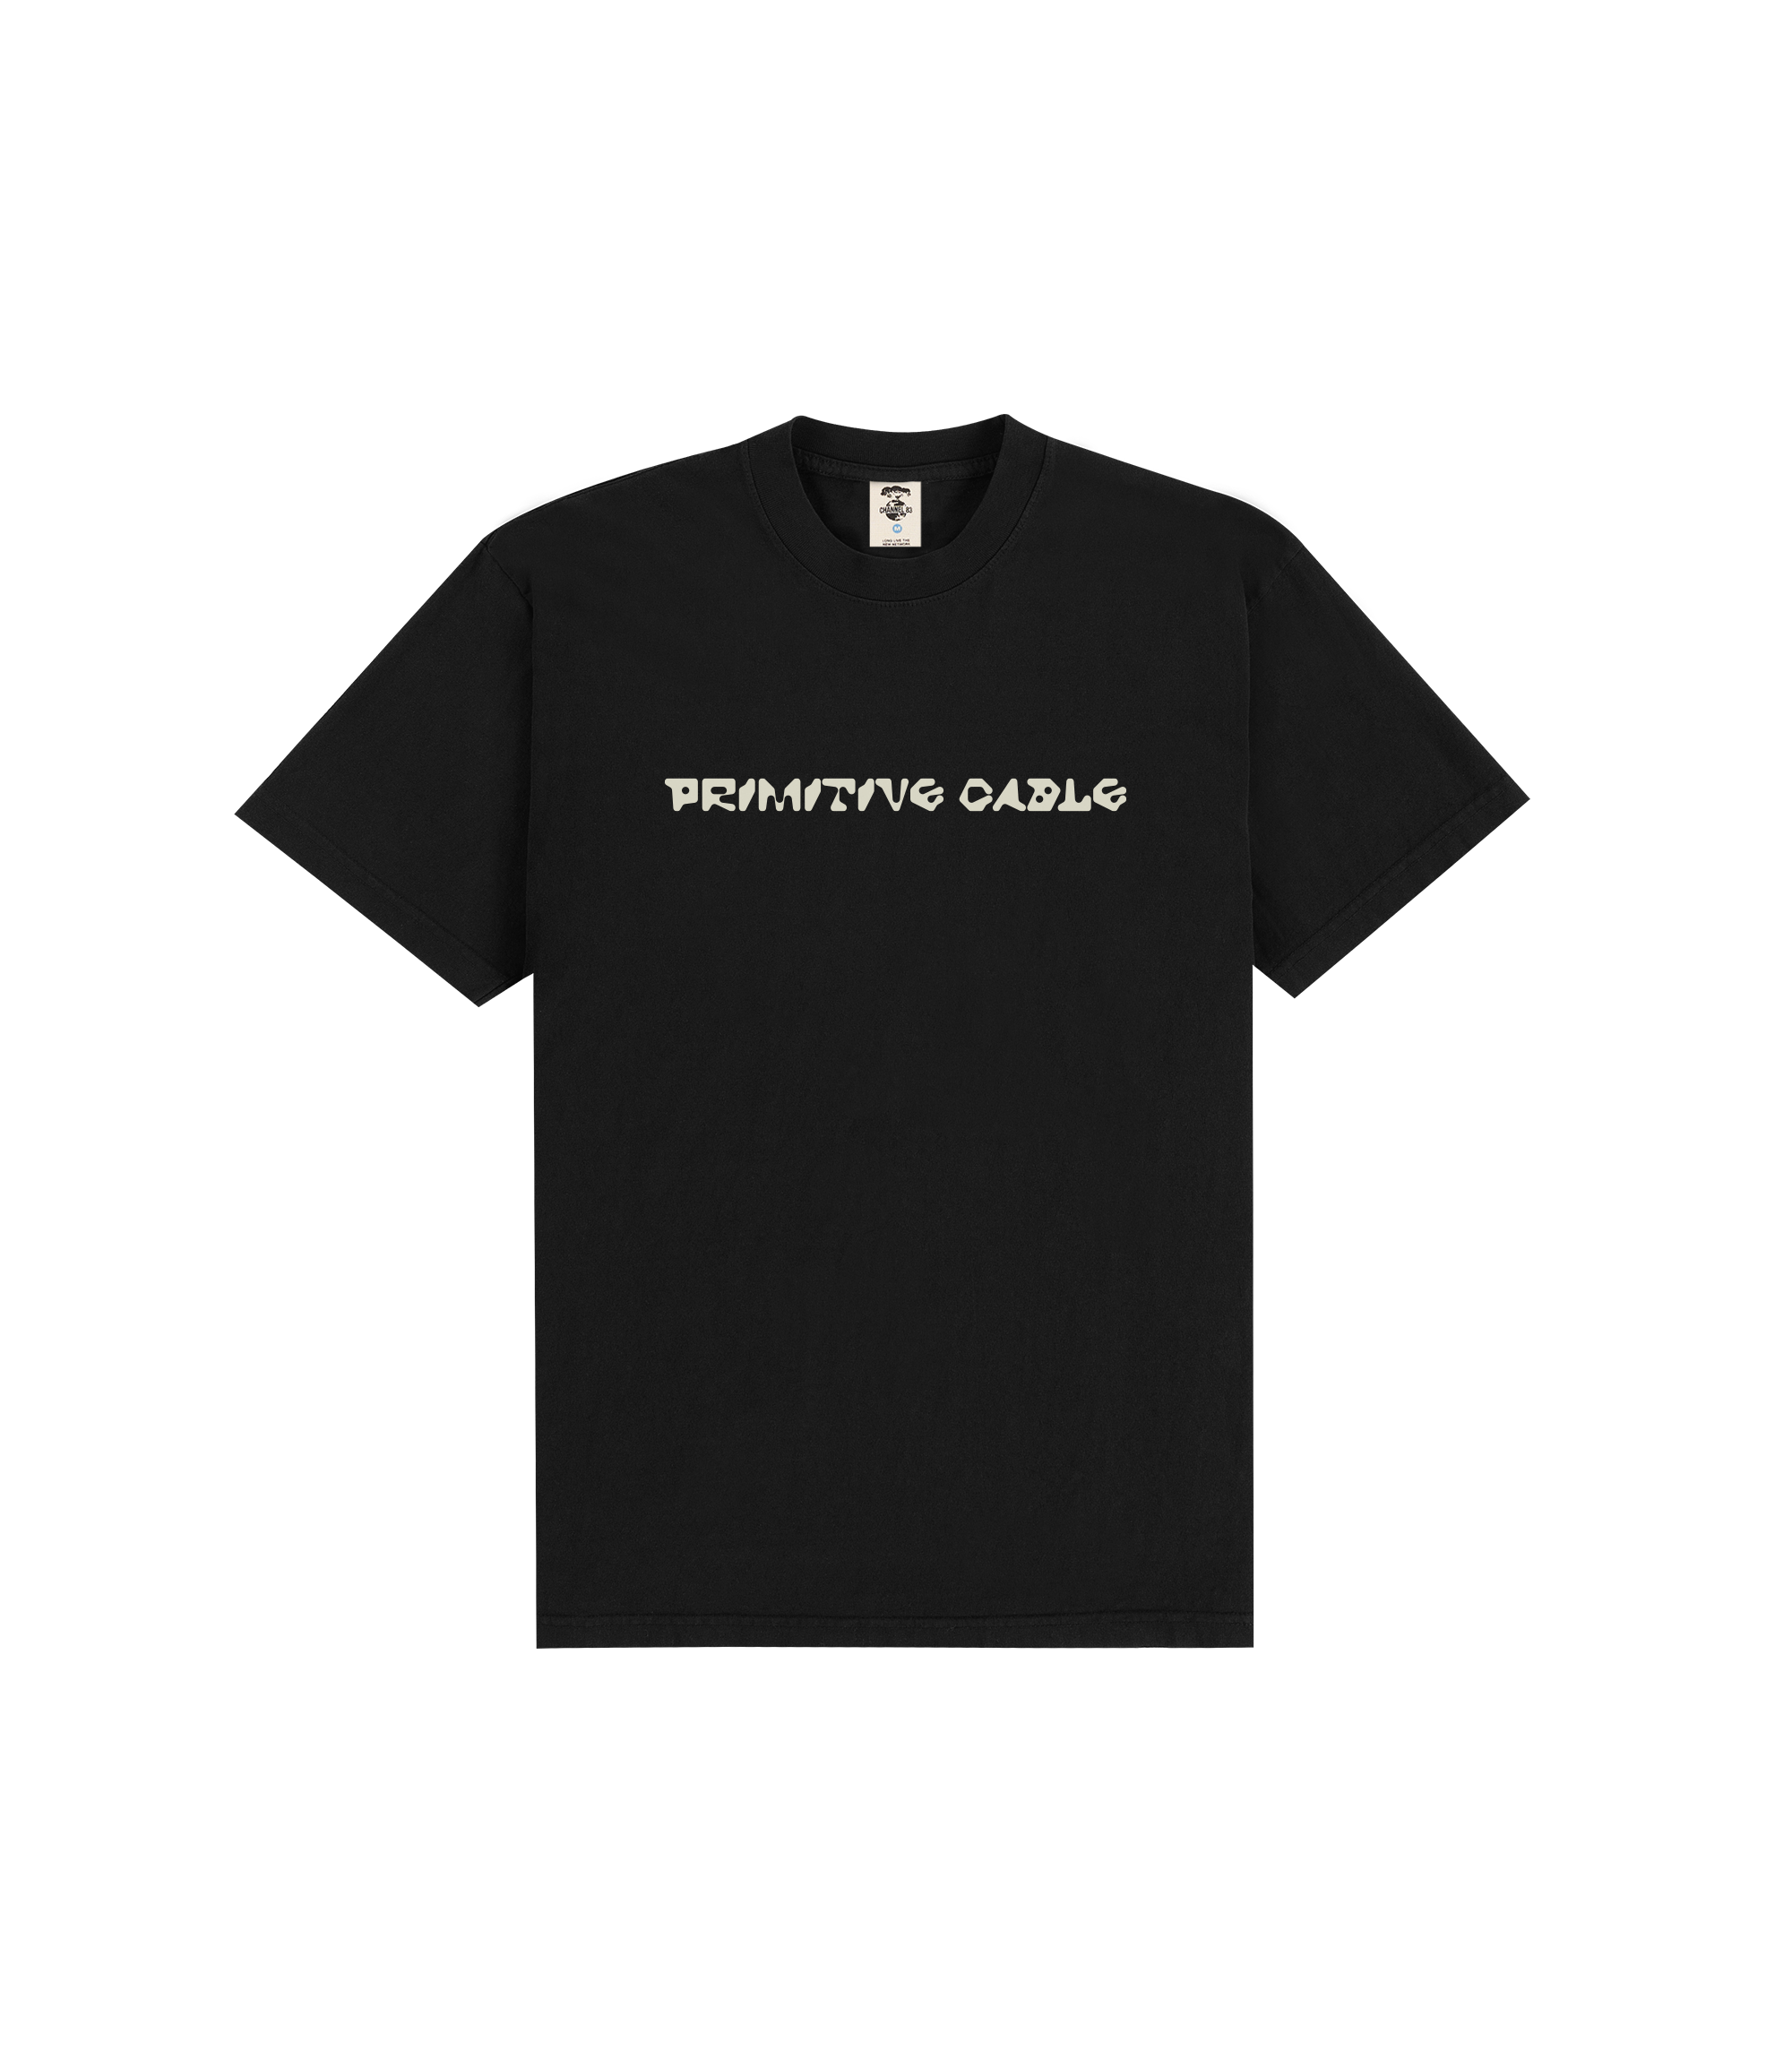 Primitive Cable T-shirt - Black